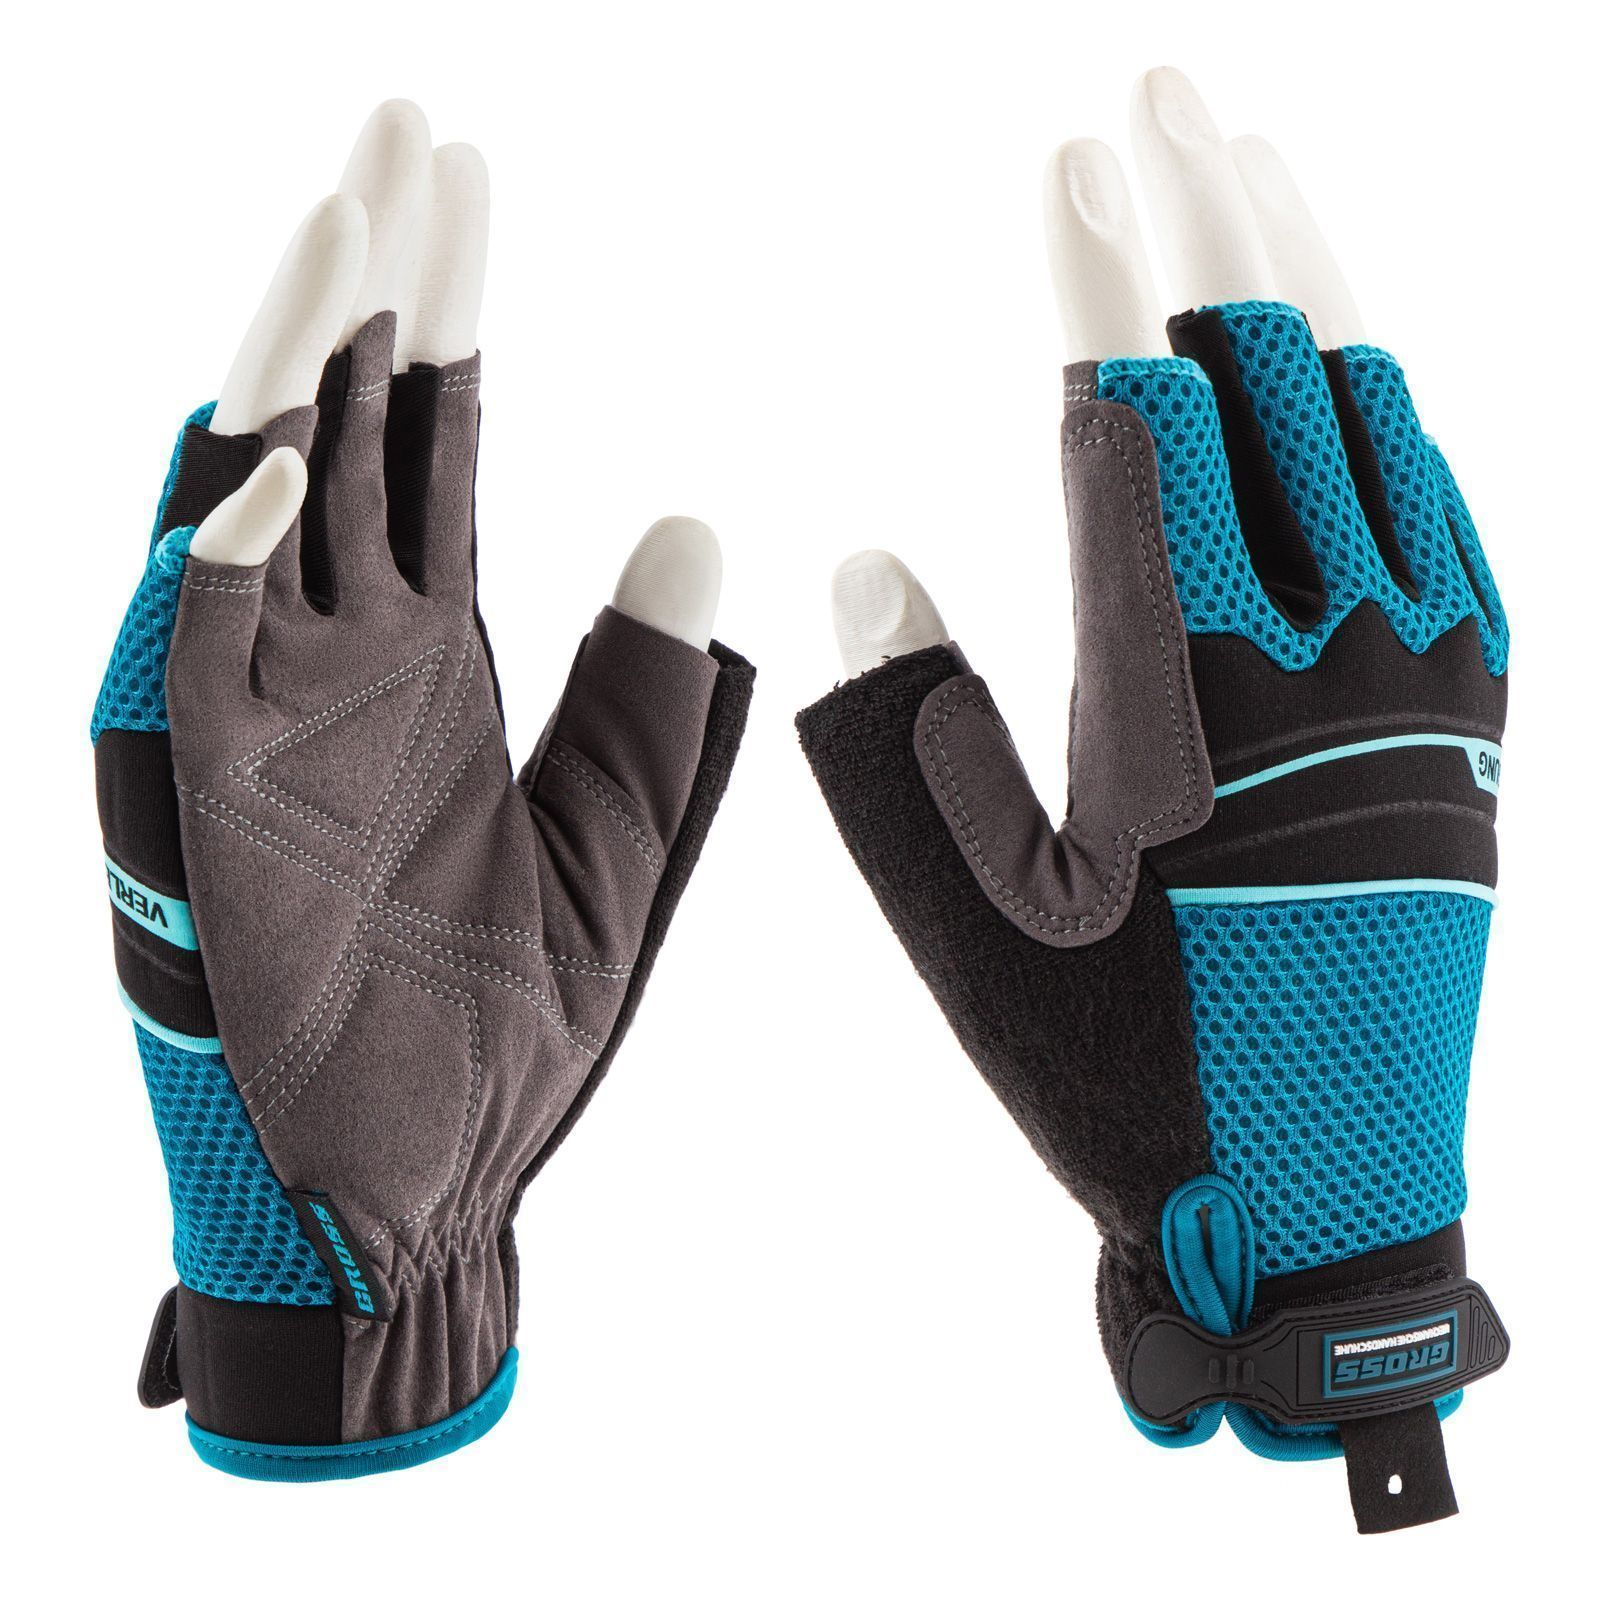 Перчатки комбинированные облегченные, открытые пальцы AKTIV, XL  ...Gross 90317